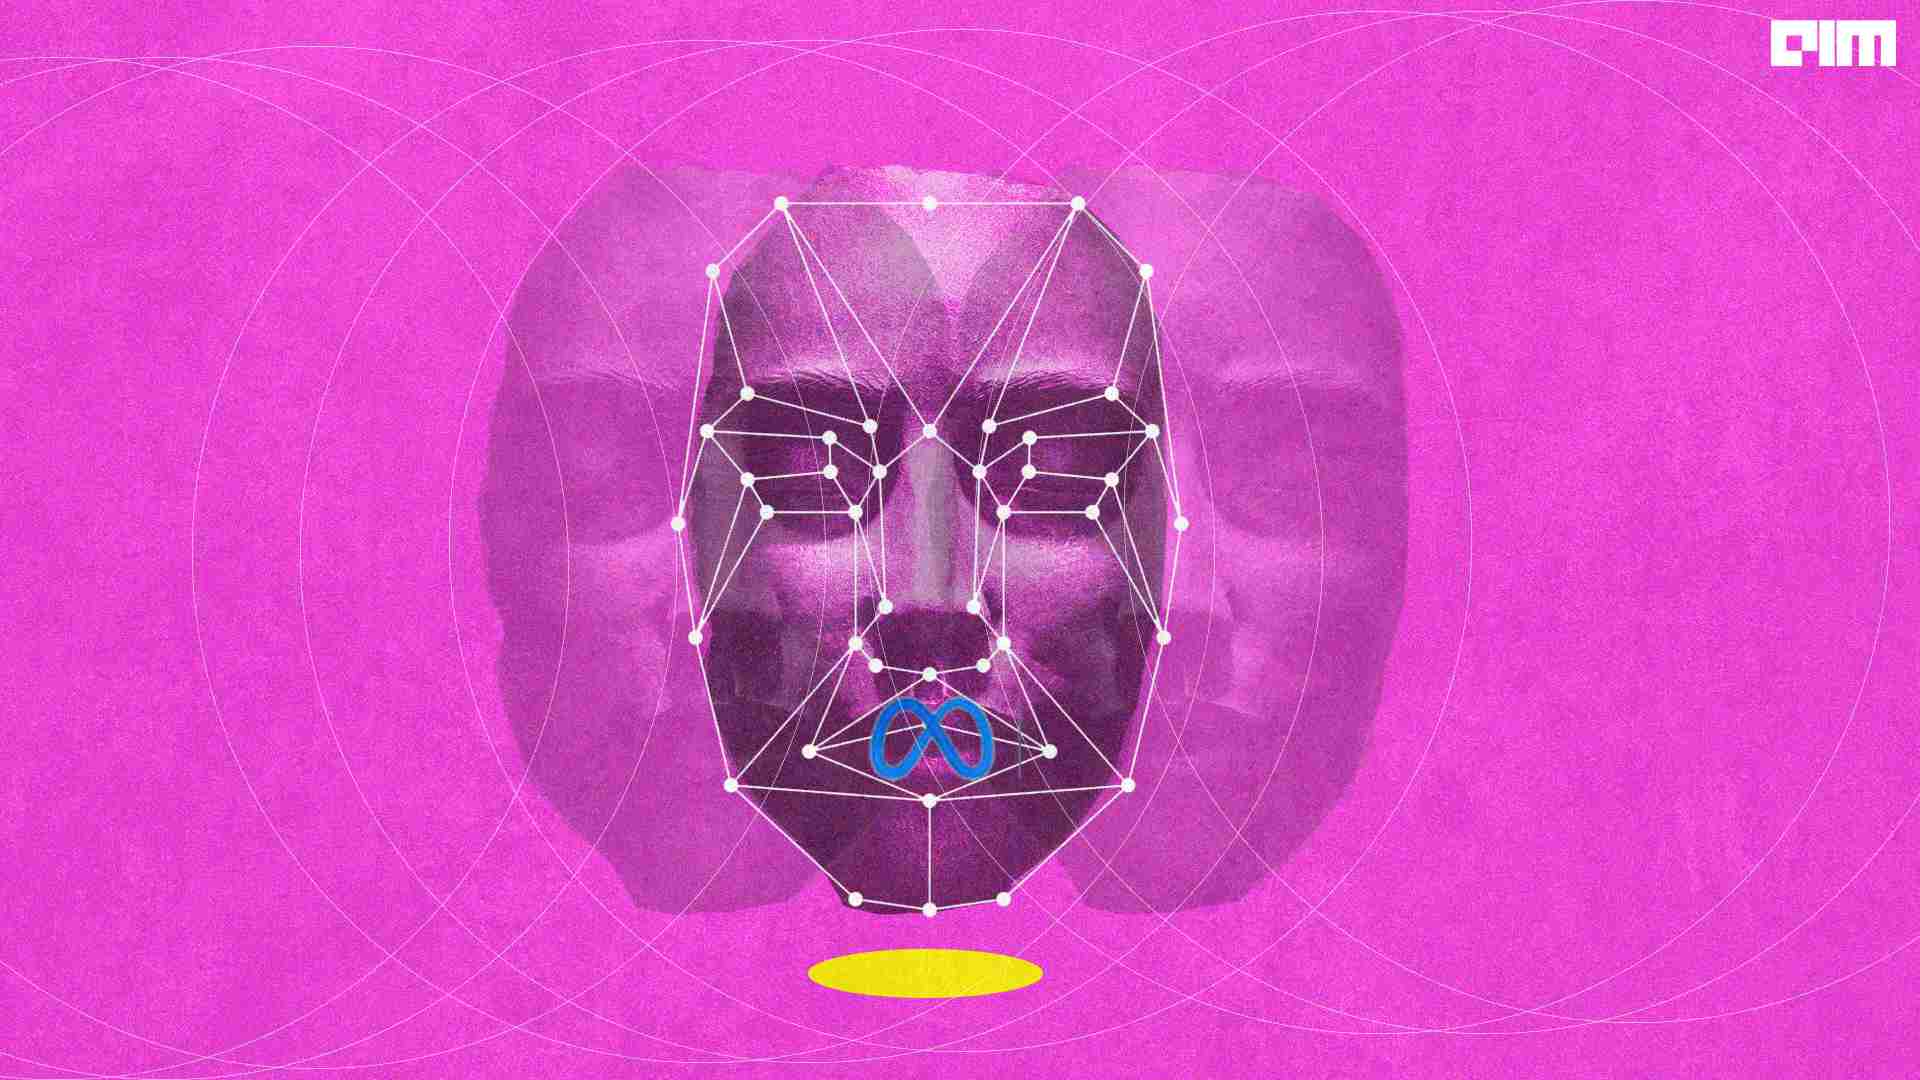 Meta facial recognition tech